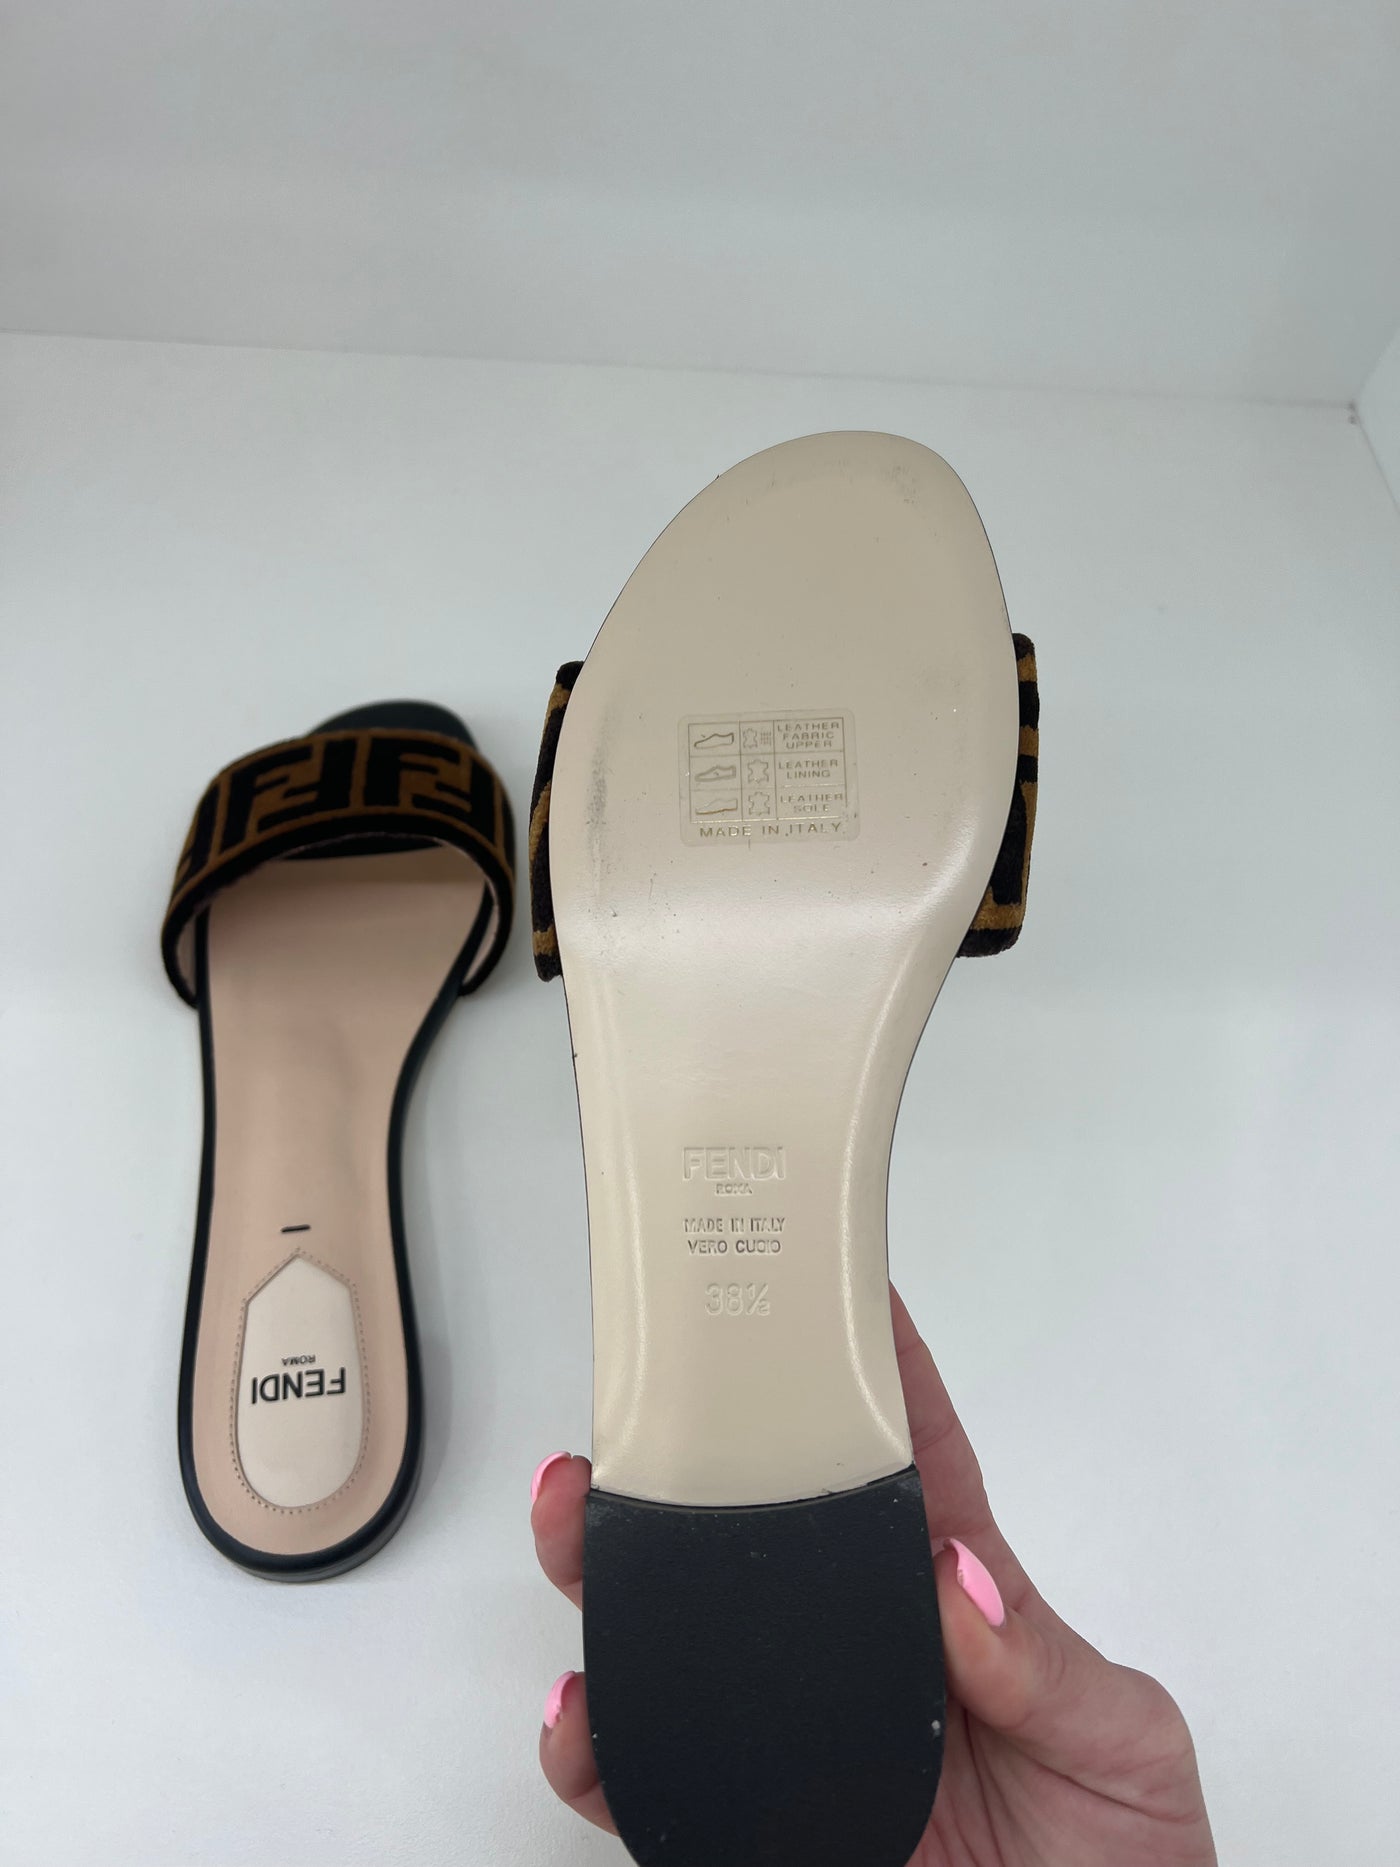 Fendi Slides - Size 38.5 - SOLD